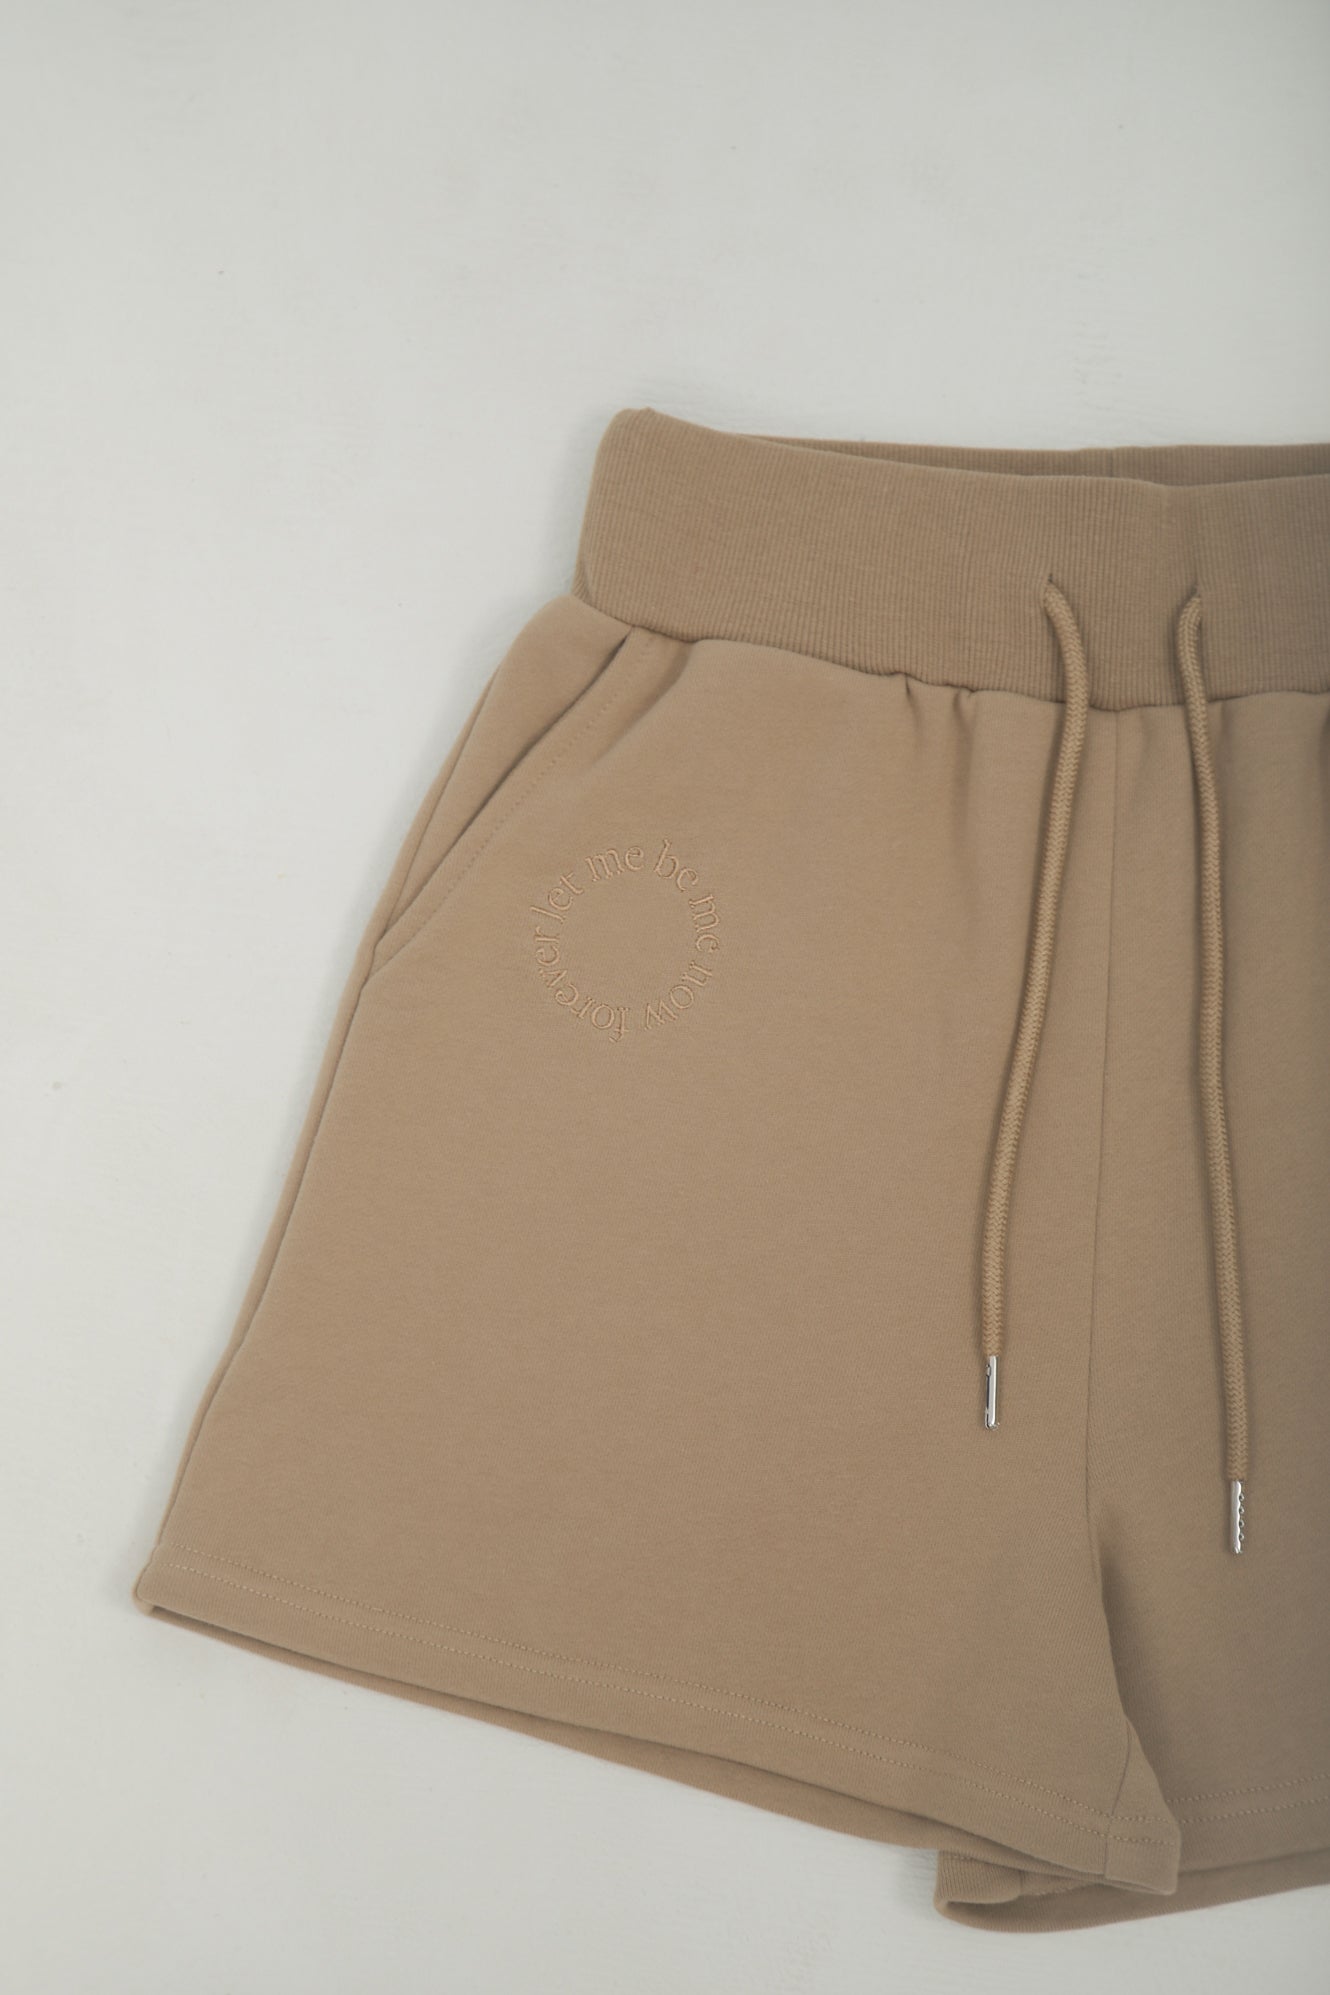 LM Leme logo cotton shorts（Brown)